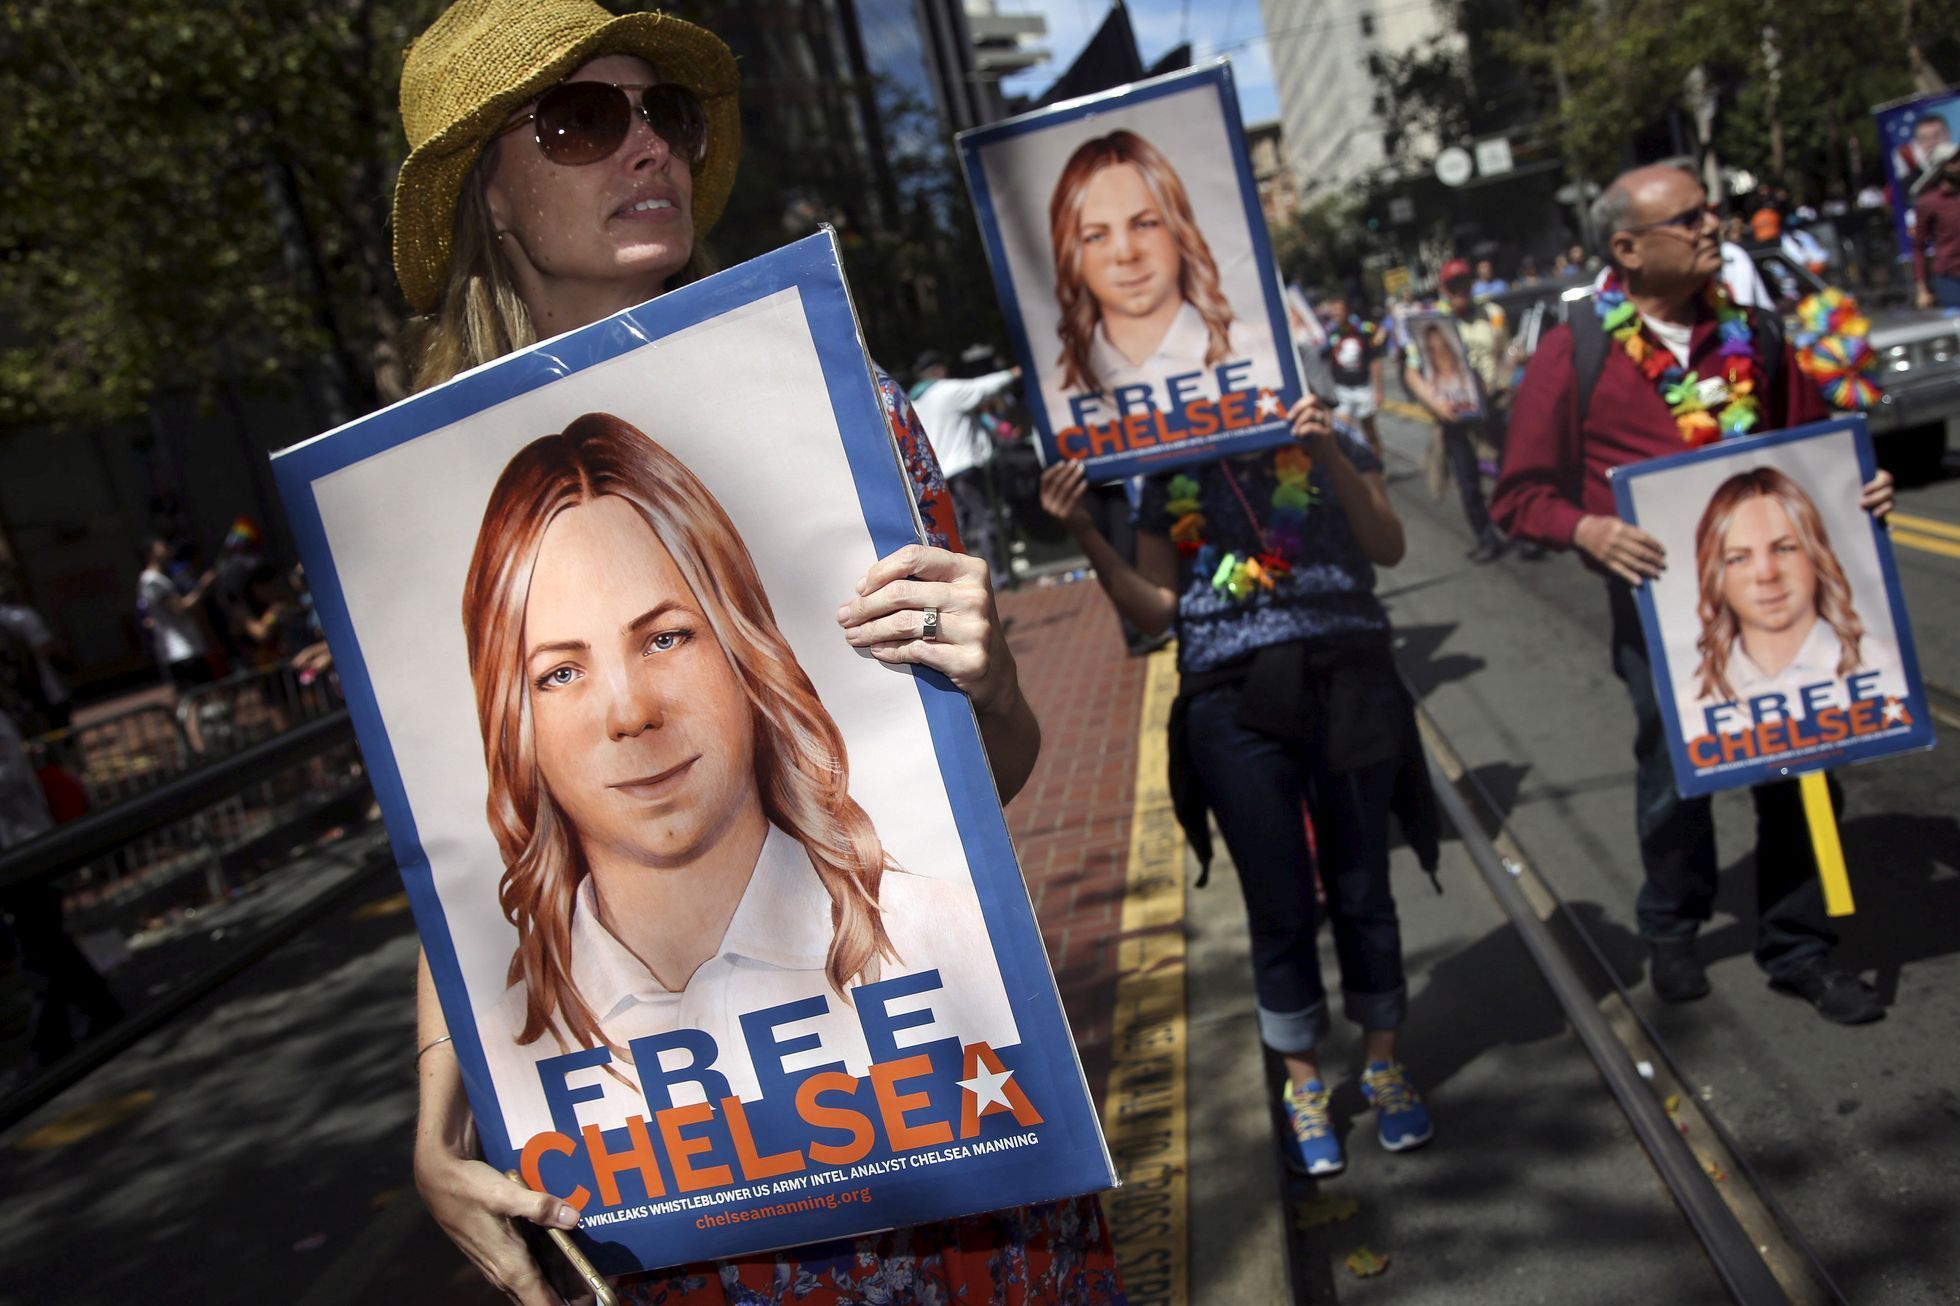 Demonstrace za propuštění Chelsea Manningové